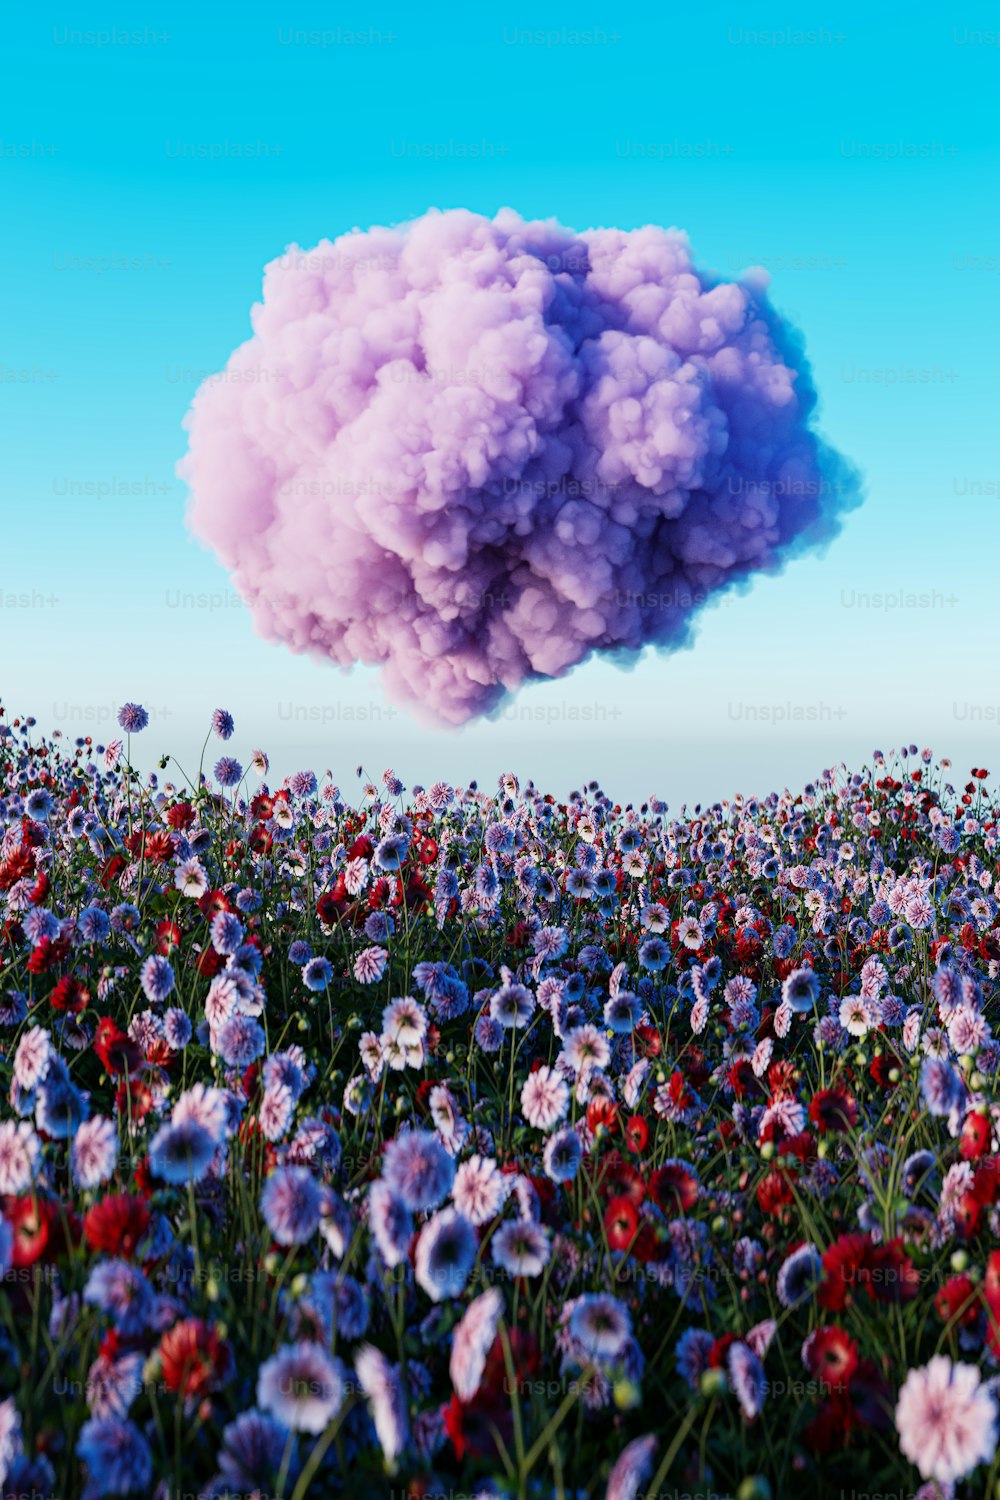 연기 구름이 꽃밭 위에 떠 있다